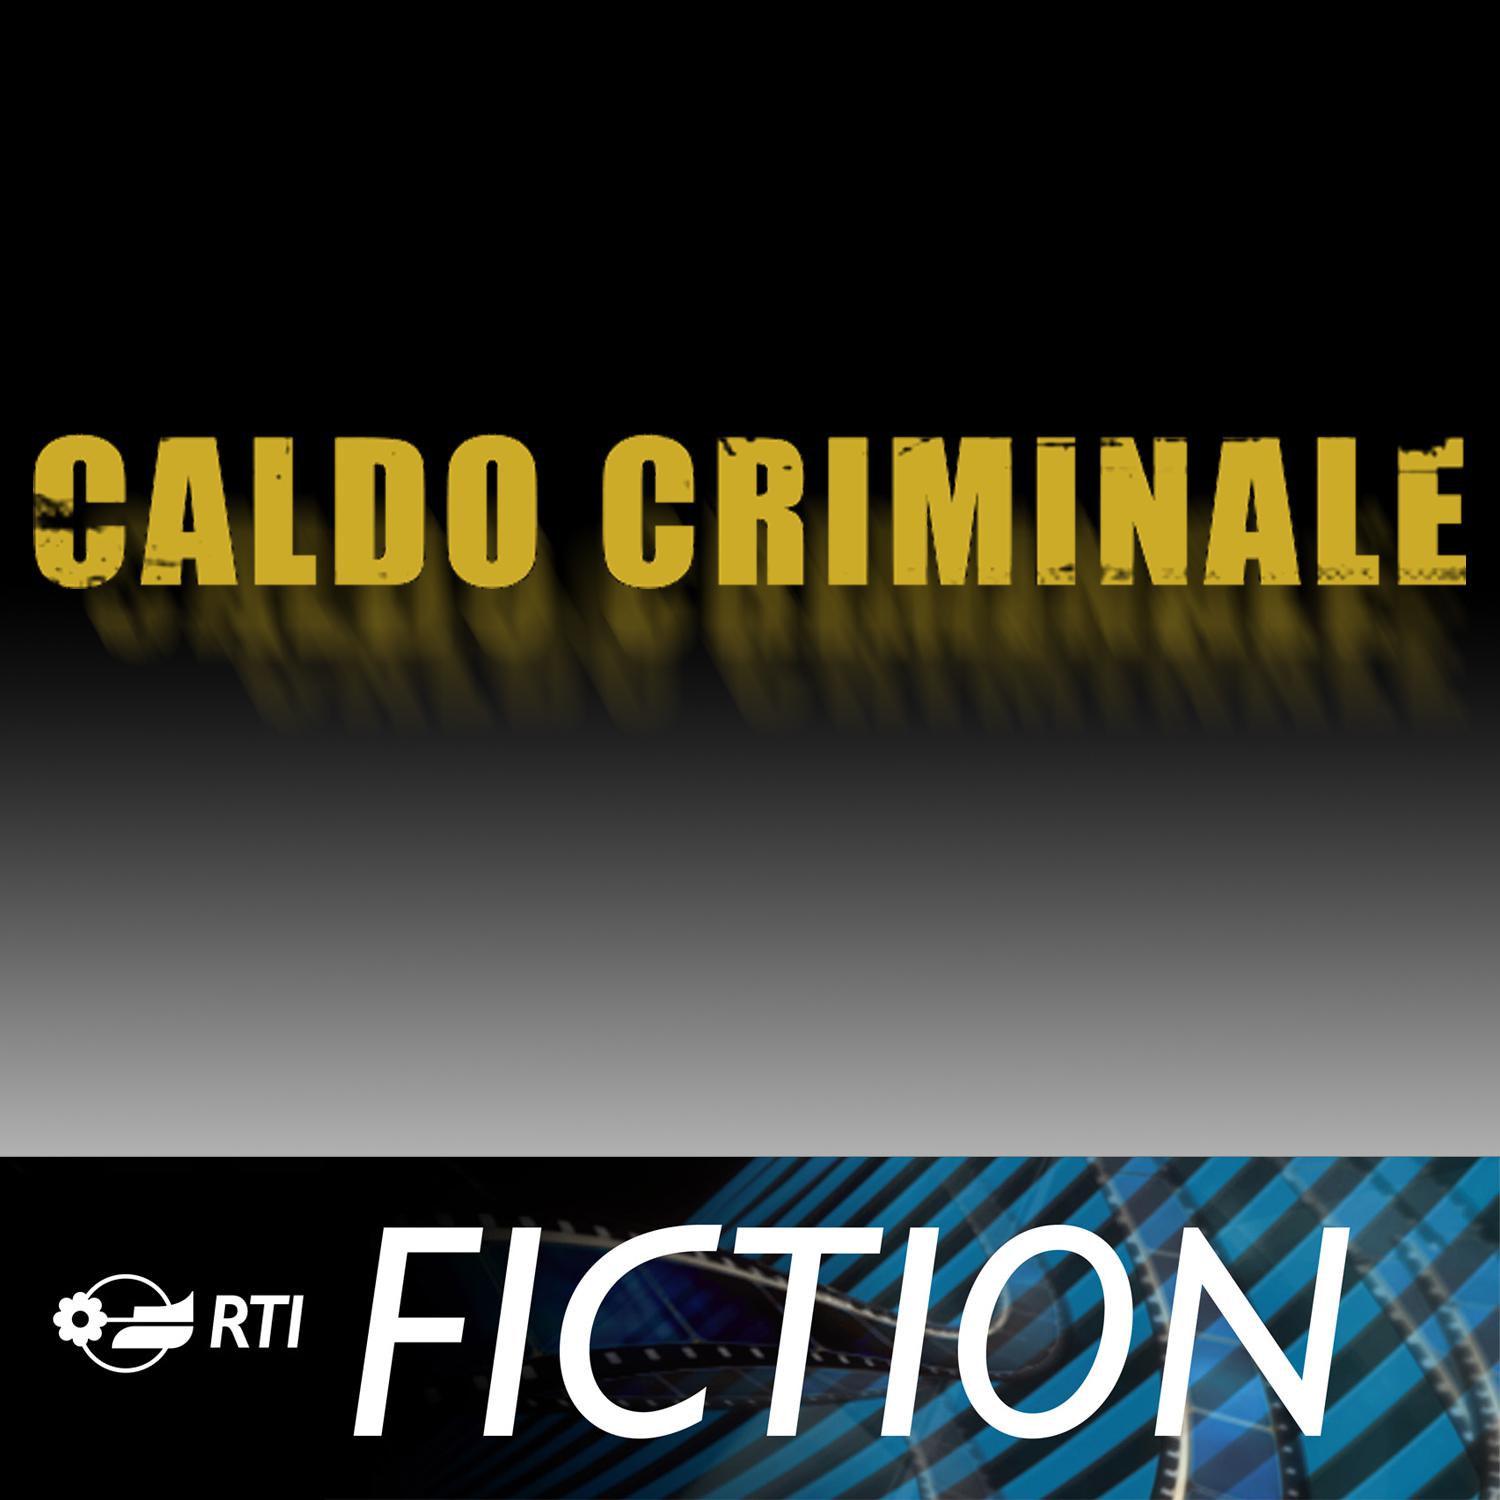 Caldo criminale (Colonna sonora originale della serie TV)专辑